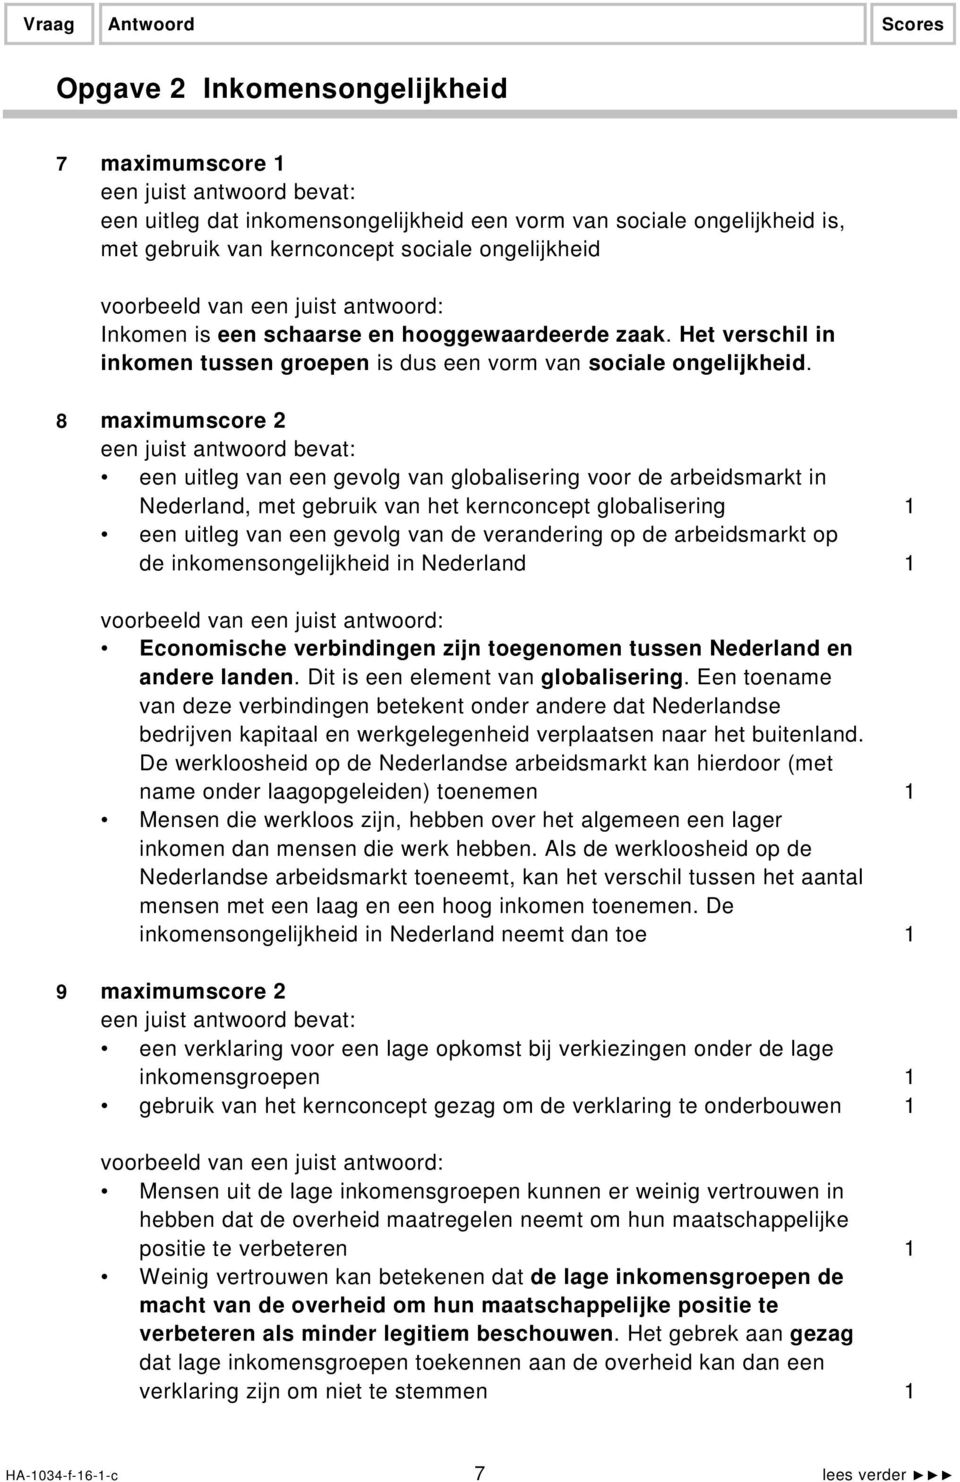 8 maximumscore 2 een uitleg van een gevolg van globalisering voor de arbeidsmarkt in Nederland, met gebruik van het kernconcept globalisering 1 een uitleg van een gevolg van de verandering op de